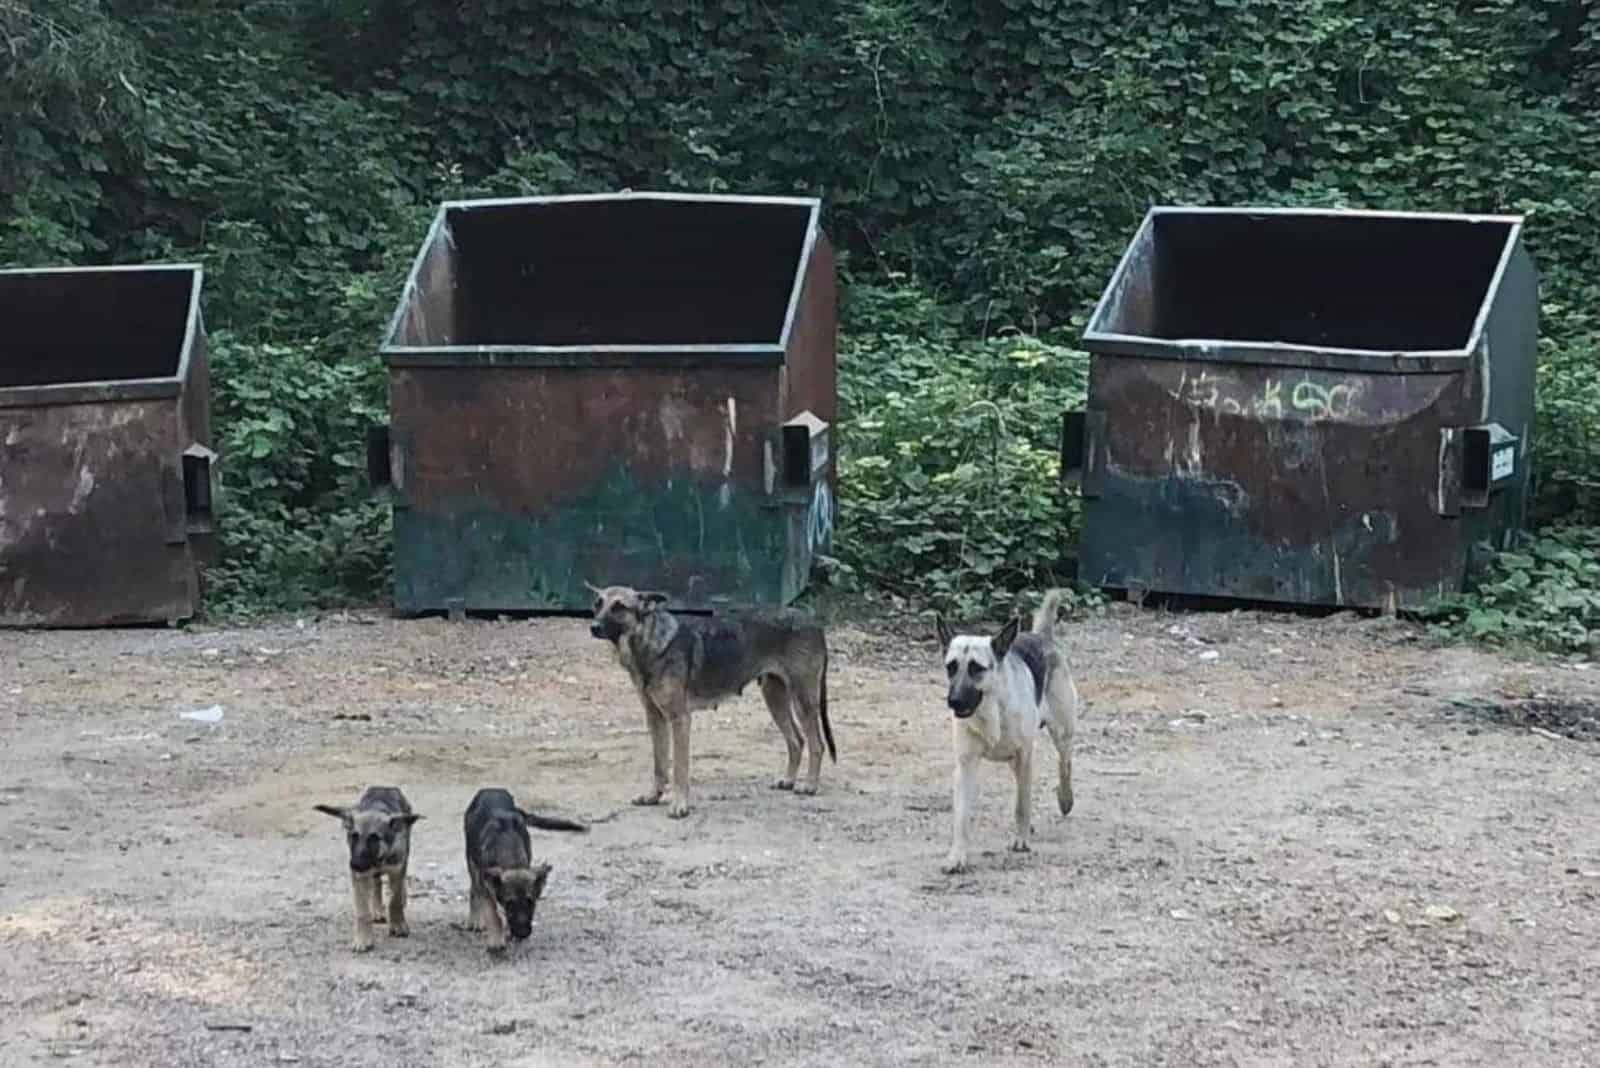 german shepherd family standing near dumpsters